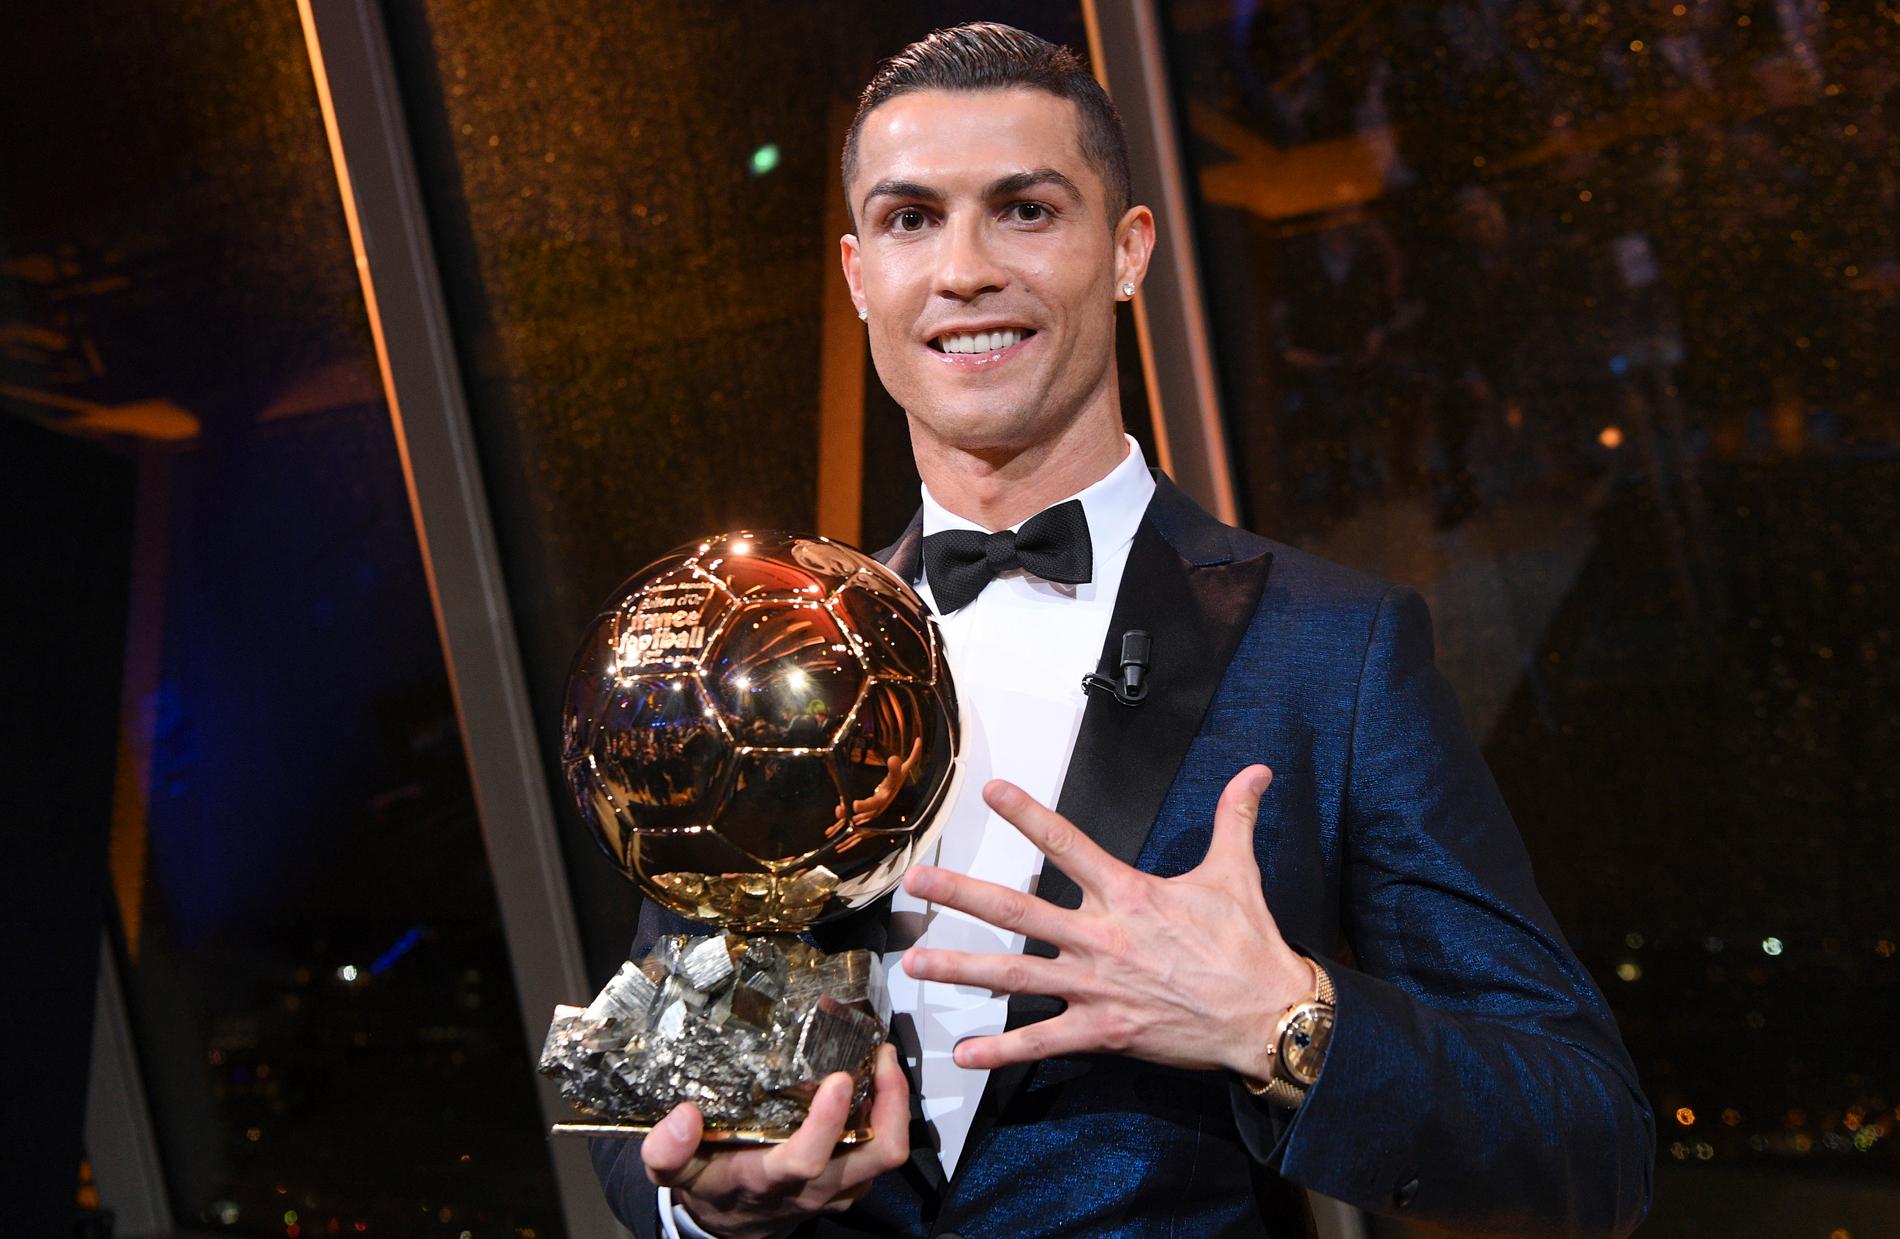 2017 vann Cristiano Ronaldo sin femte Guldboll (Ballon d’Or).